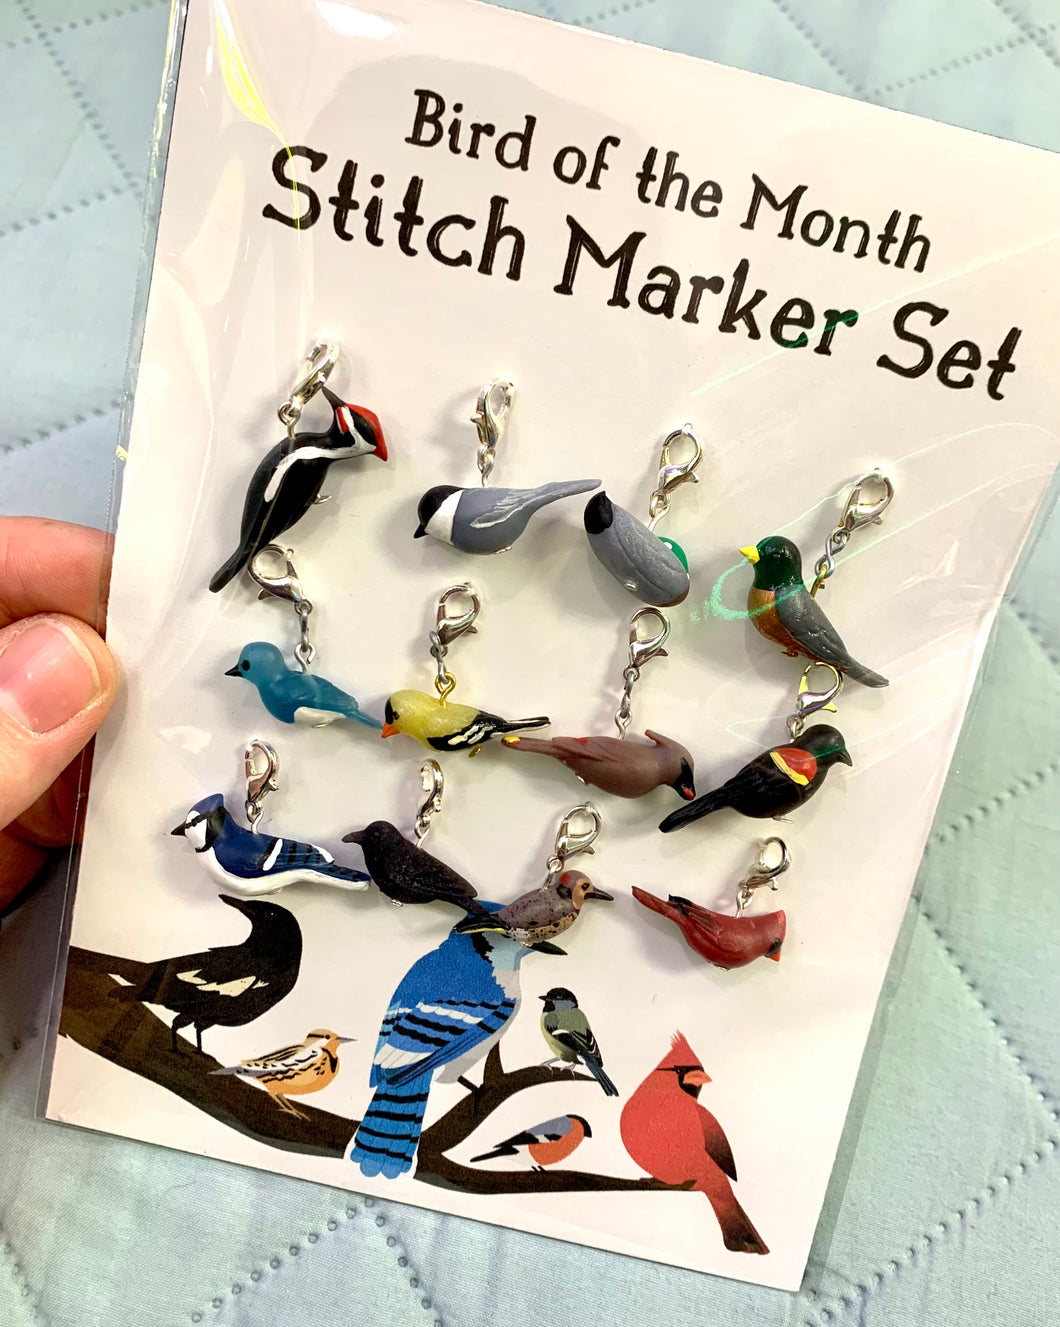 Bird of the Month Stitch Marker Set